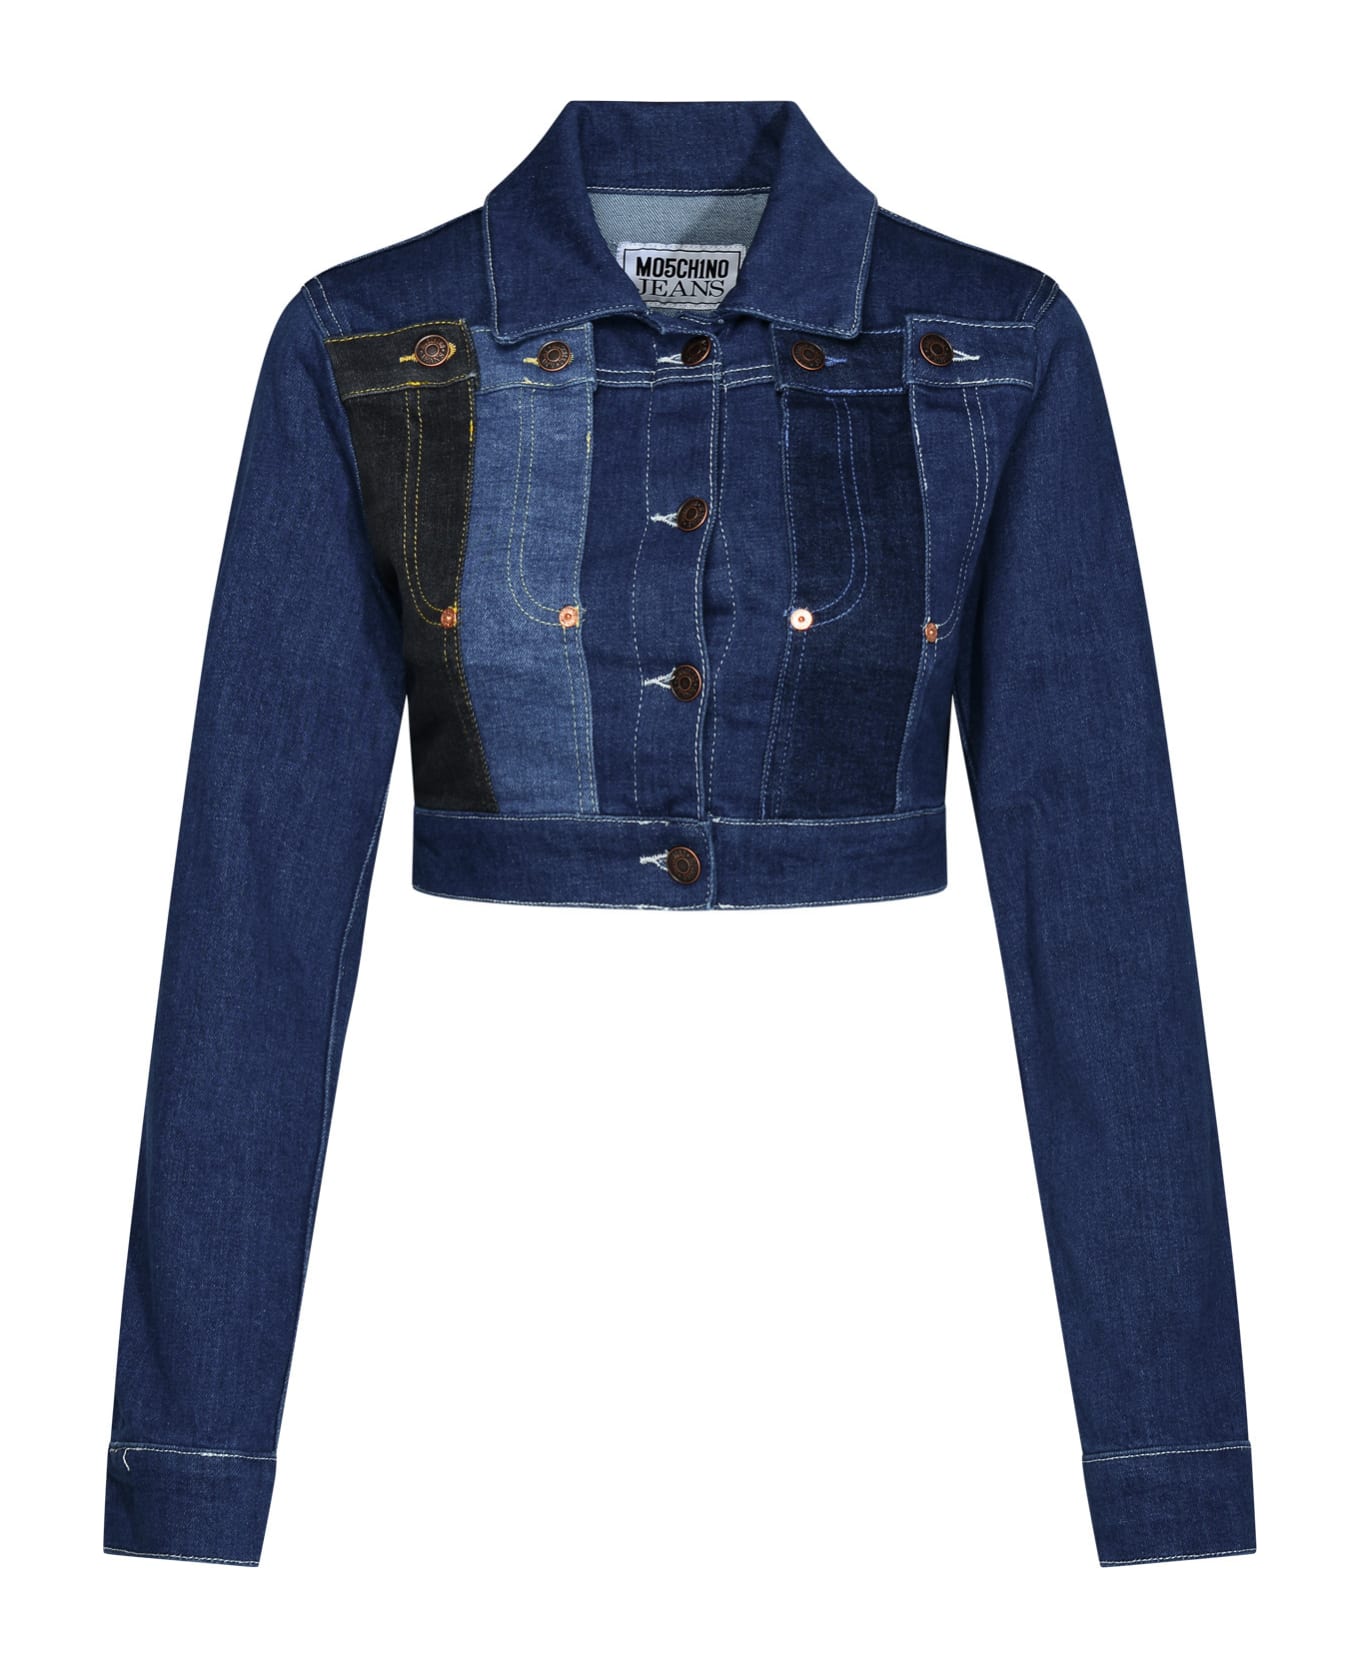 M05CH1N0 Jeans Blue Cotton Jacket - Denim